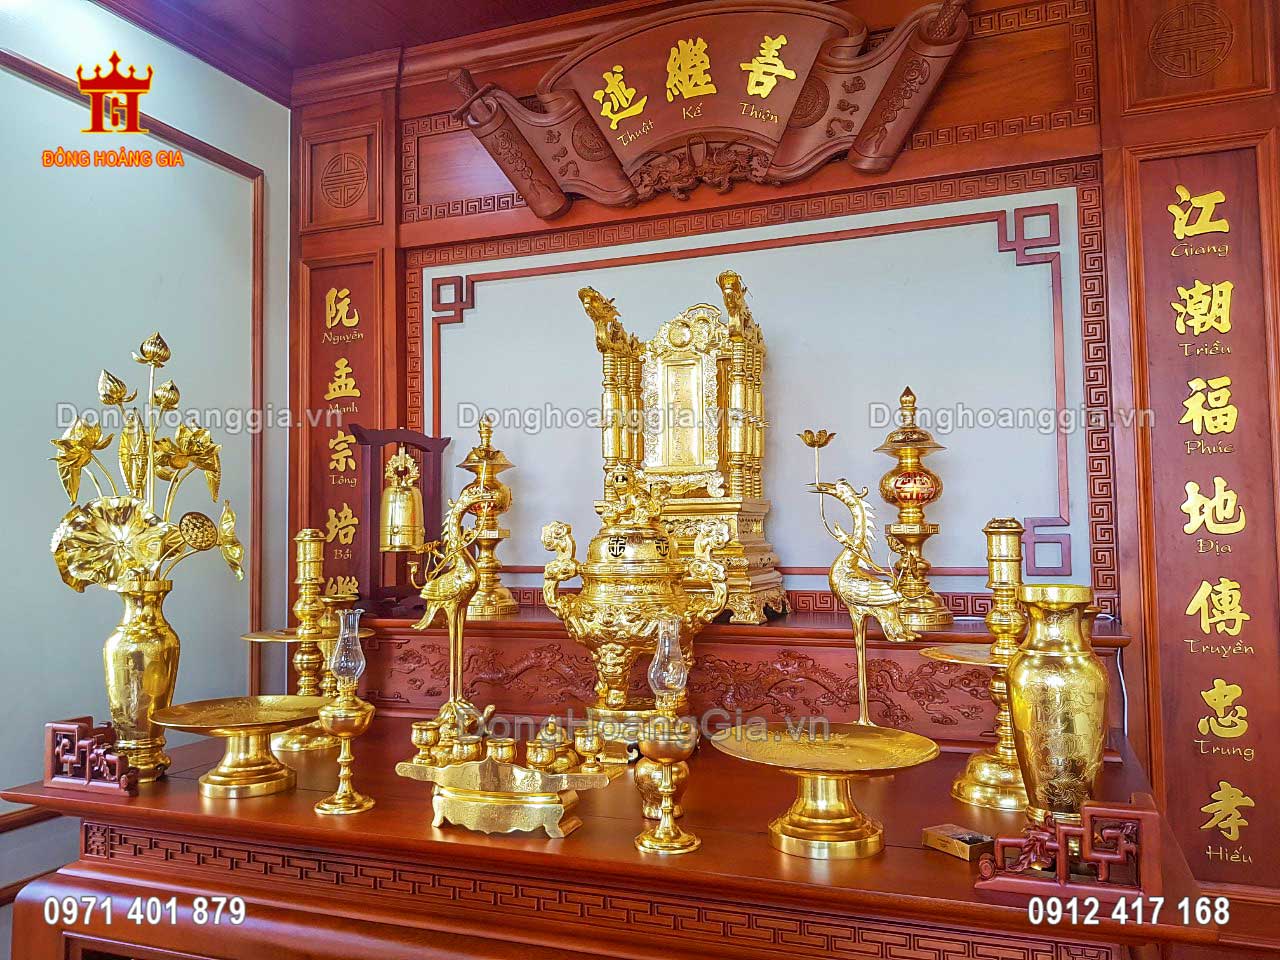 Hình ảnh bàn thờ gia tiên sang trọng với bộ đồ thờ cúng mạ vàng 24K